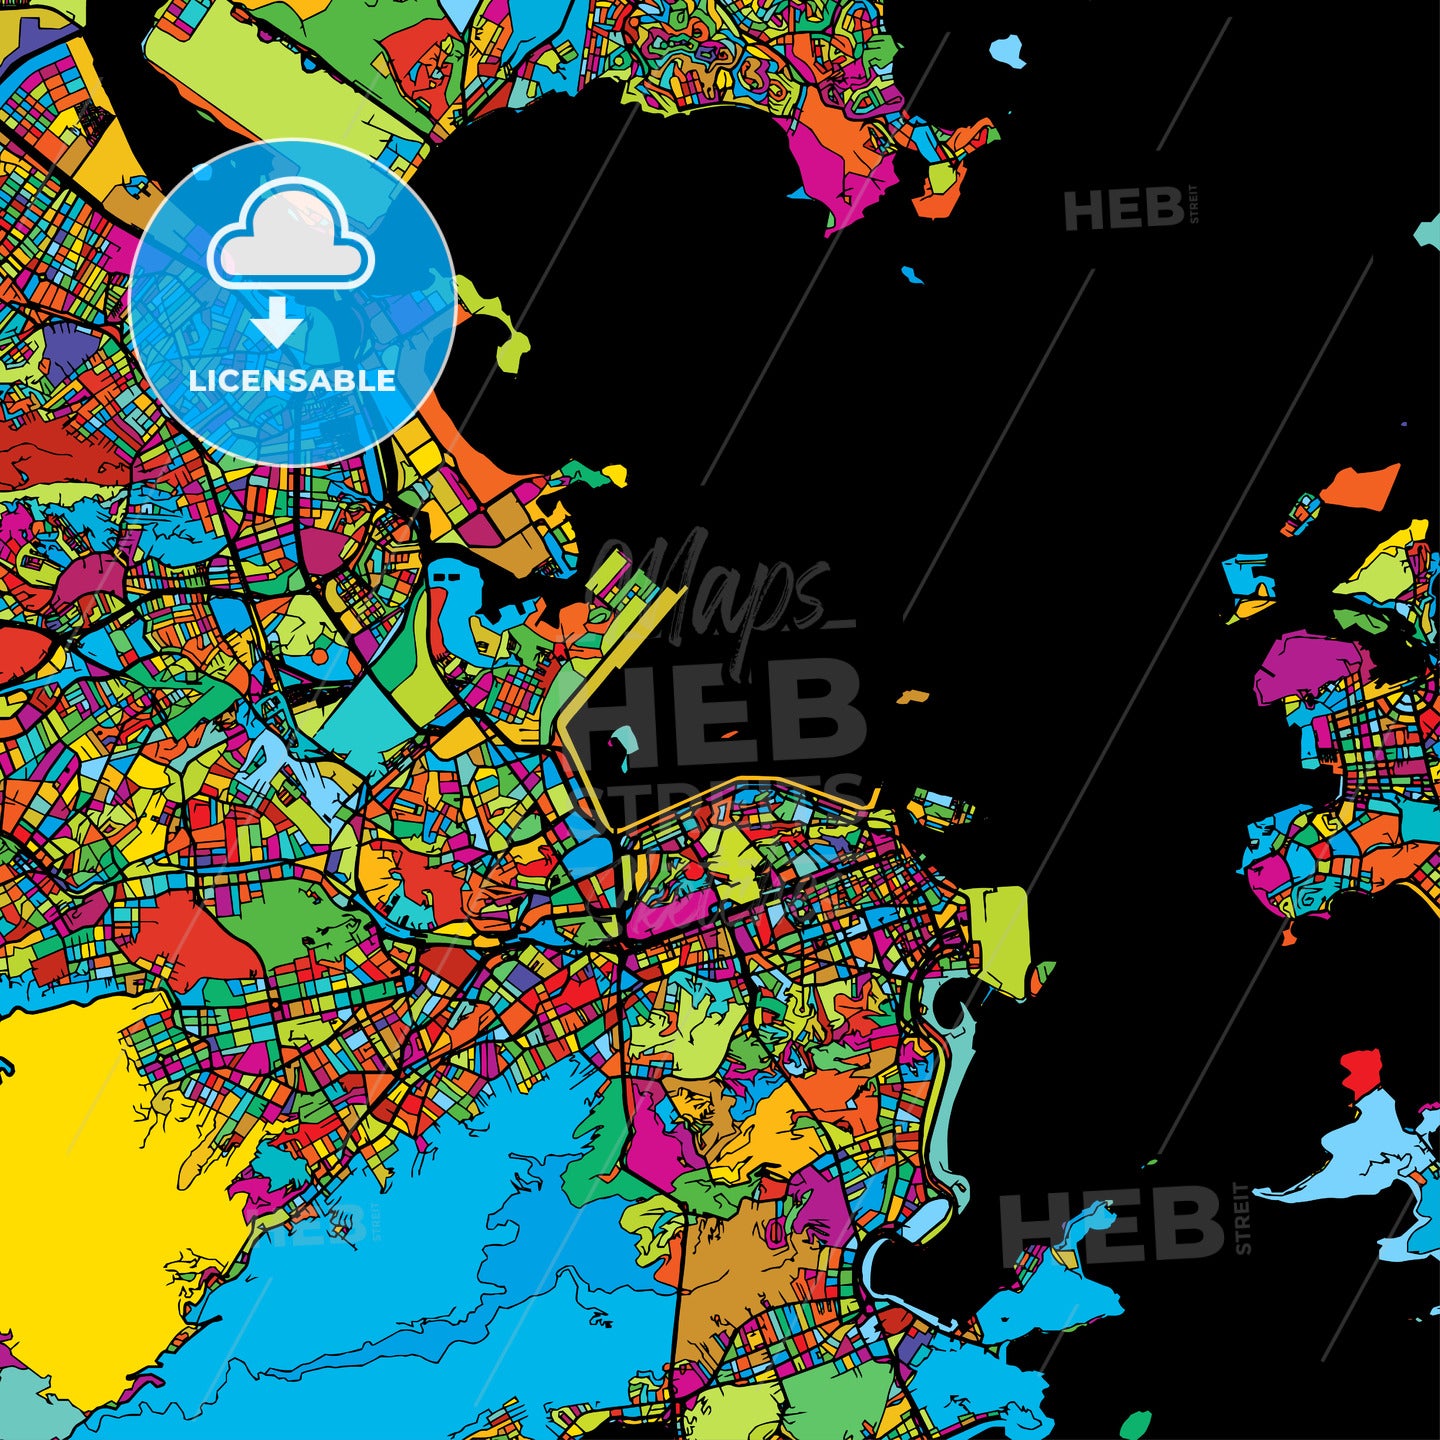 Rio de Janeiro, Brazil, Colorful Vector Map on Black